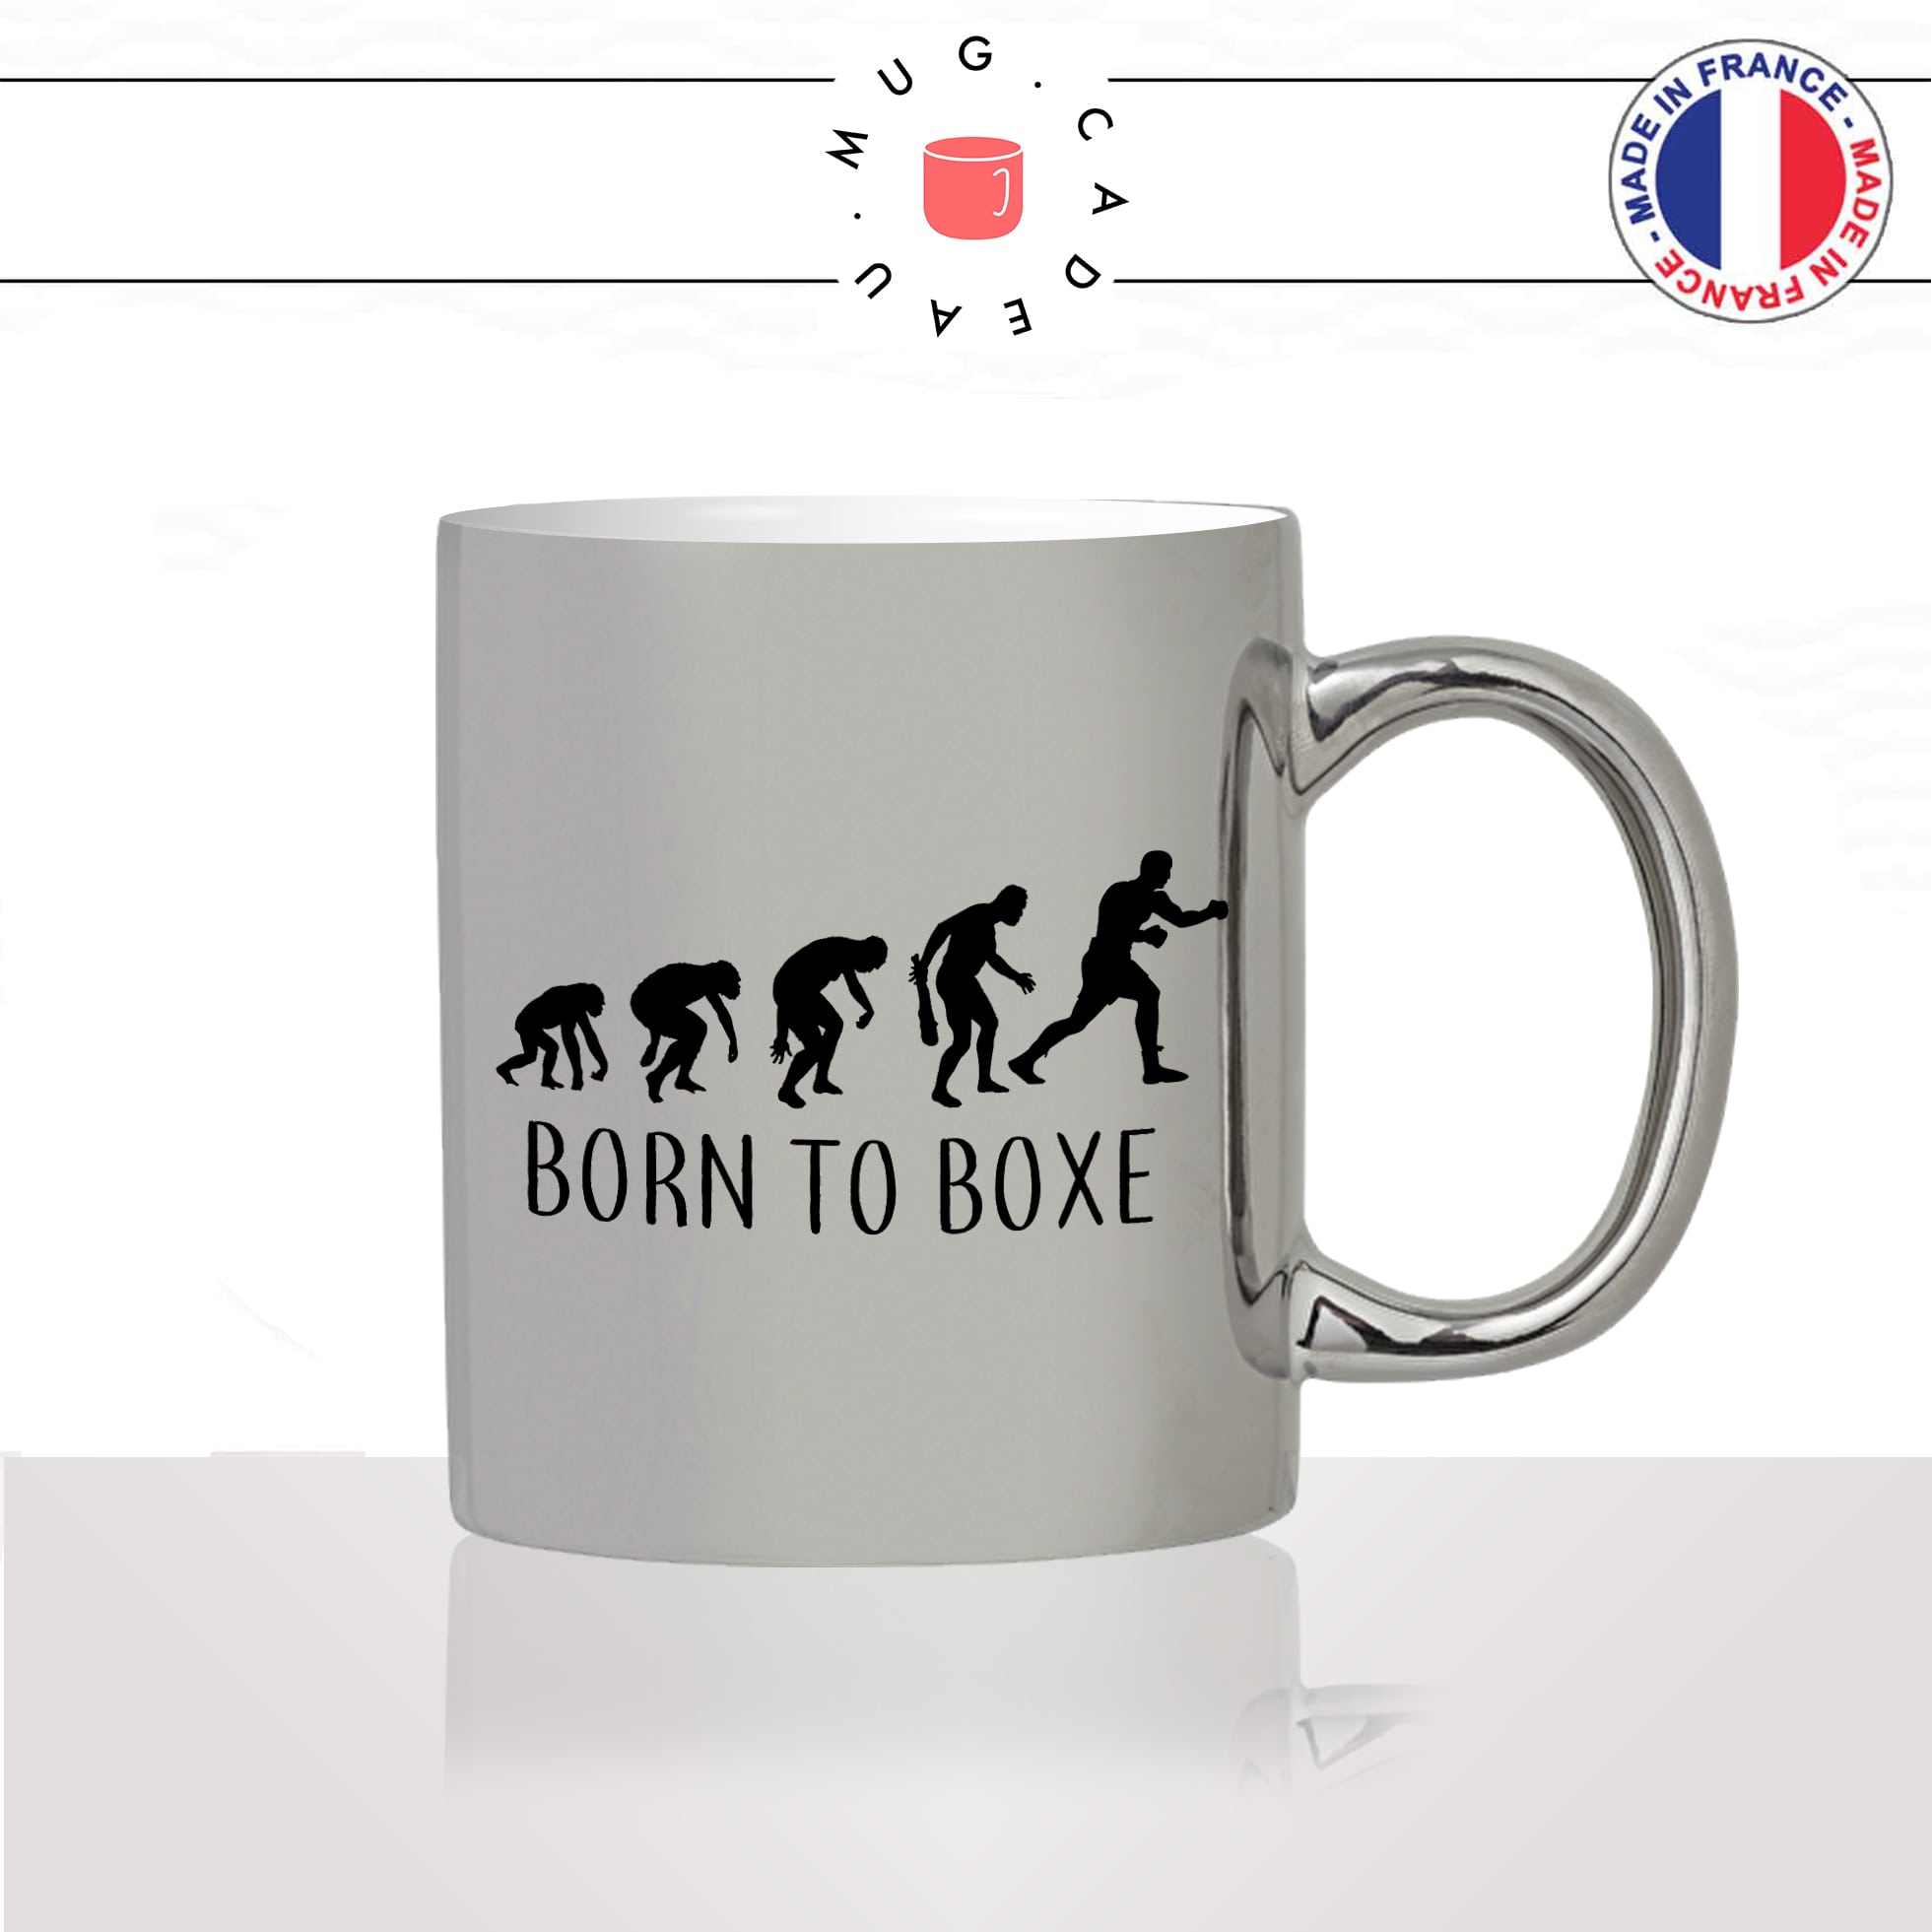 mug-tasse-argent-argenté-silver-born-to-boxe-sport--evolution-humaine-singe-primate-ring-homme-humour-idée-cadeau-fun-cool-café-thé2-min